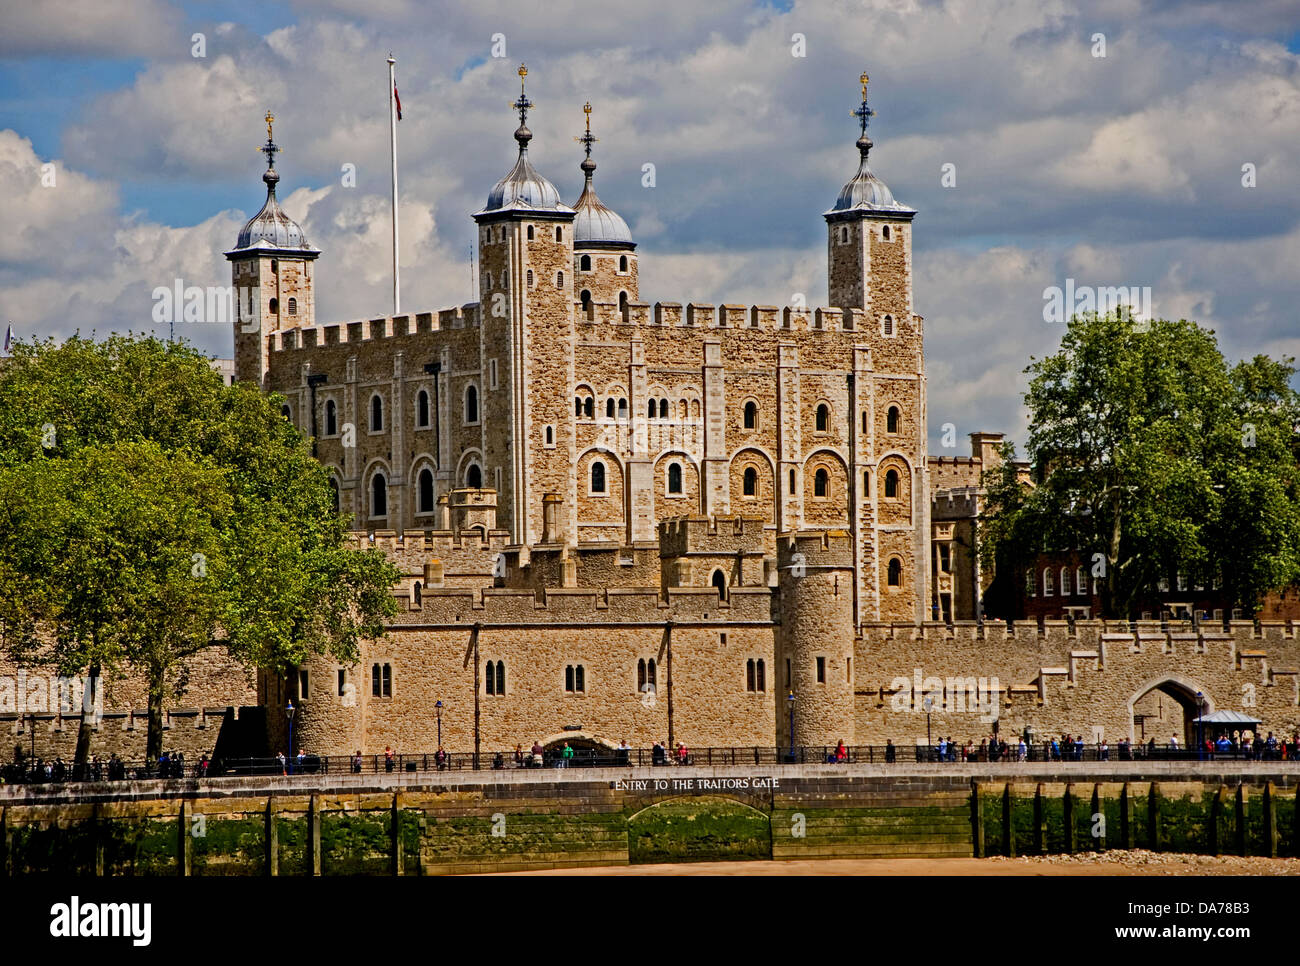 La Tour de Londres est un monument emblématique de Londres sur les rives de la Tamise. Il a mille ans d'histoire qui remonte à Guillaume le Conquérant Banque D'Images